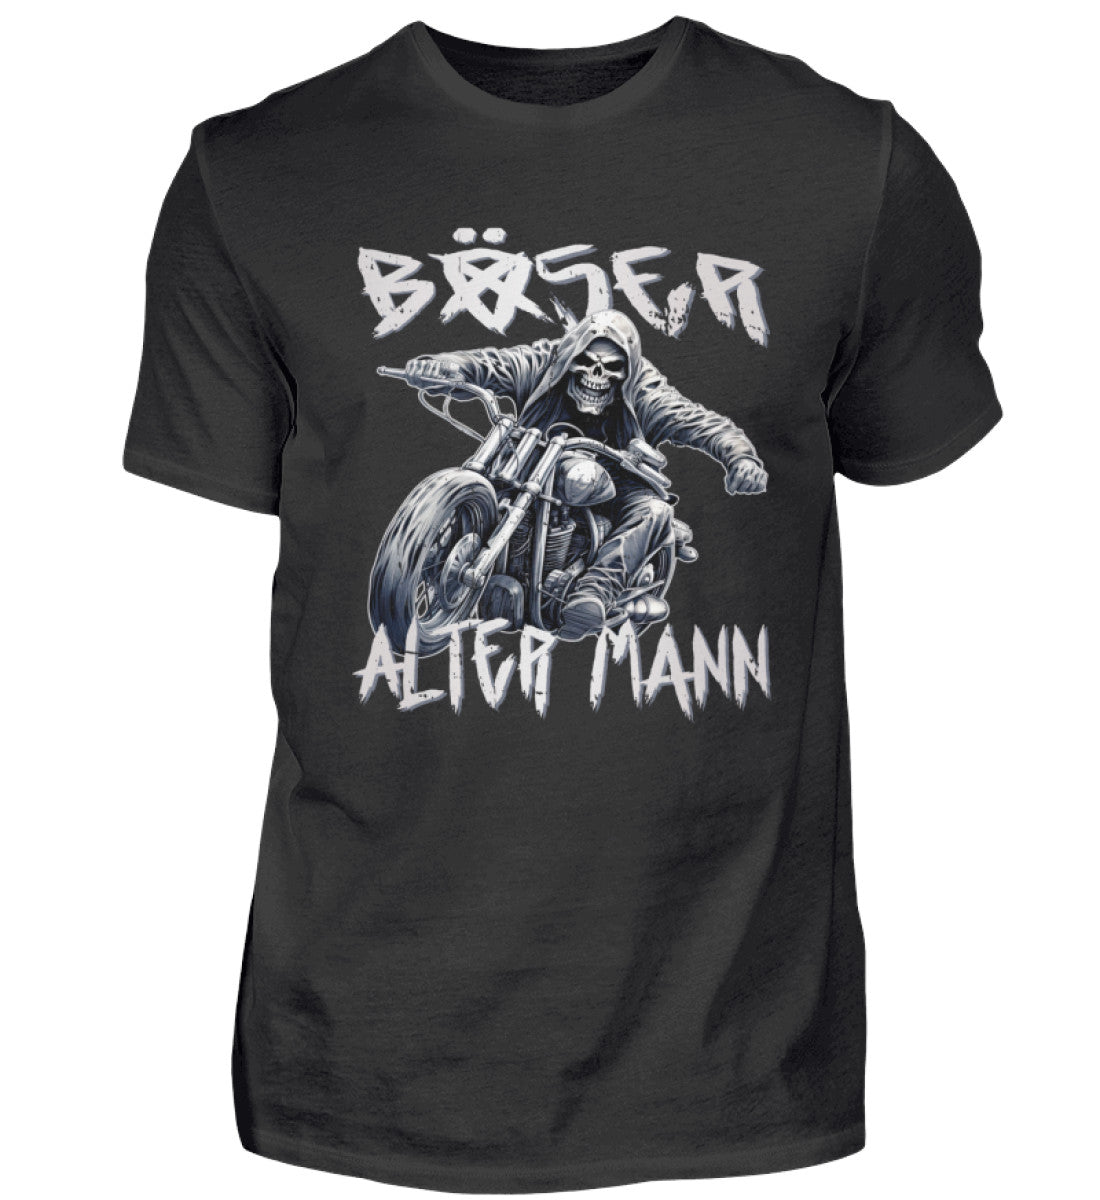 Biker T-Shirt "Böser alter Mann" von Wingbikers für Motorradfahrer in schwarz.